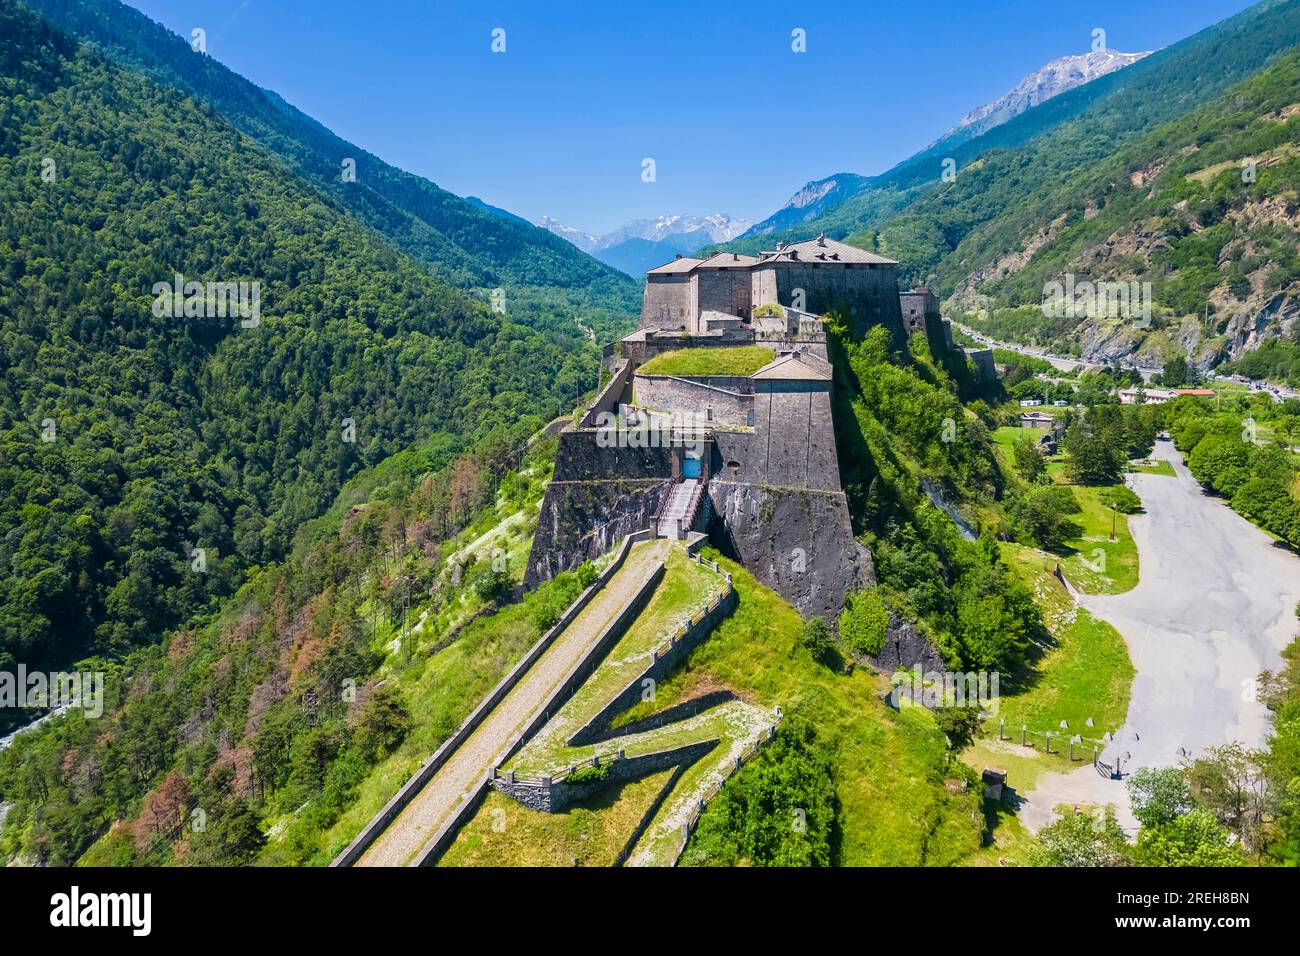 Vue aérienne de la forteresse d'Exilles surveillant la vallée de Susa. Exilles, Vallée de Susa, Turin, Piémont, Italie. Banque D'Images